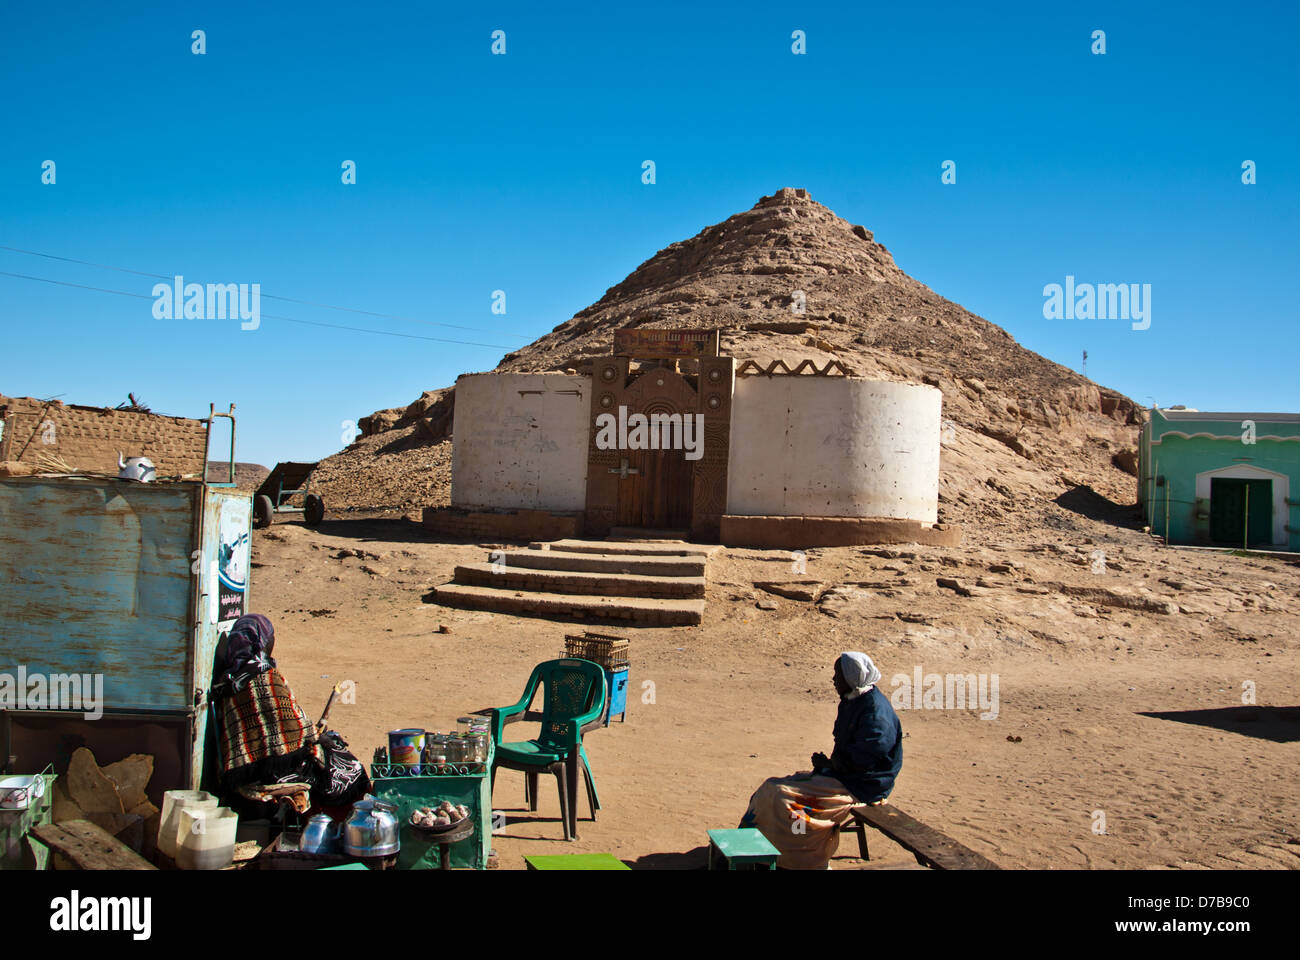 Straße von Wadi Halfa, Tee und Kaffee-Dame und ihr Client in fg, Mazar Midhat Reisebüro in bg, Nord-Sudan Stockfoto